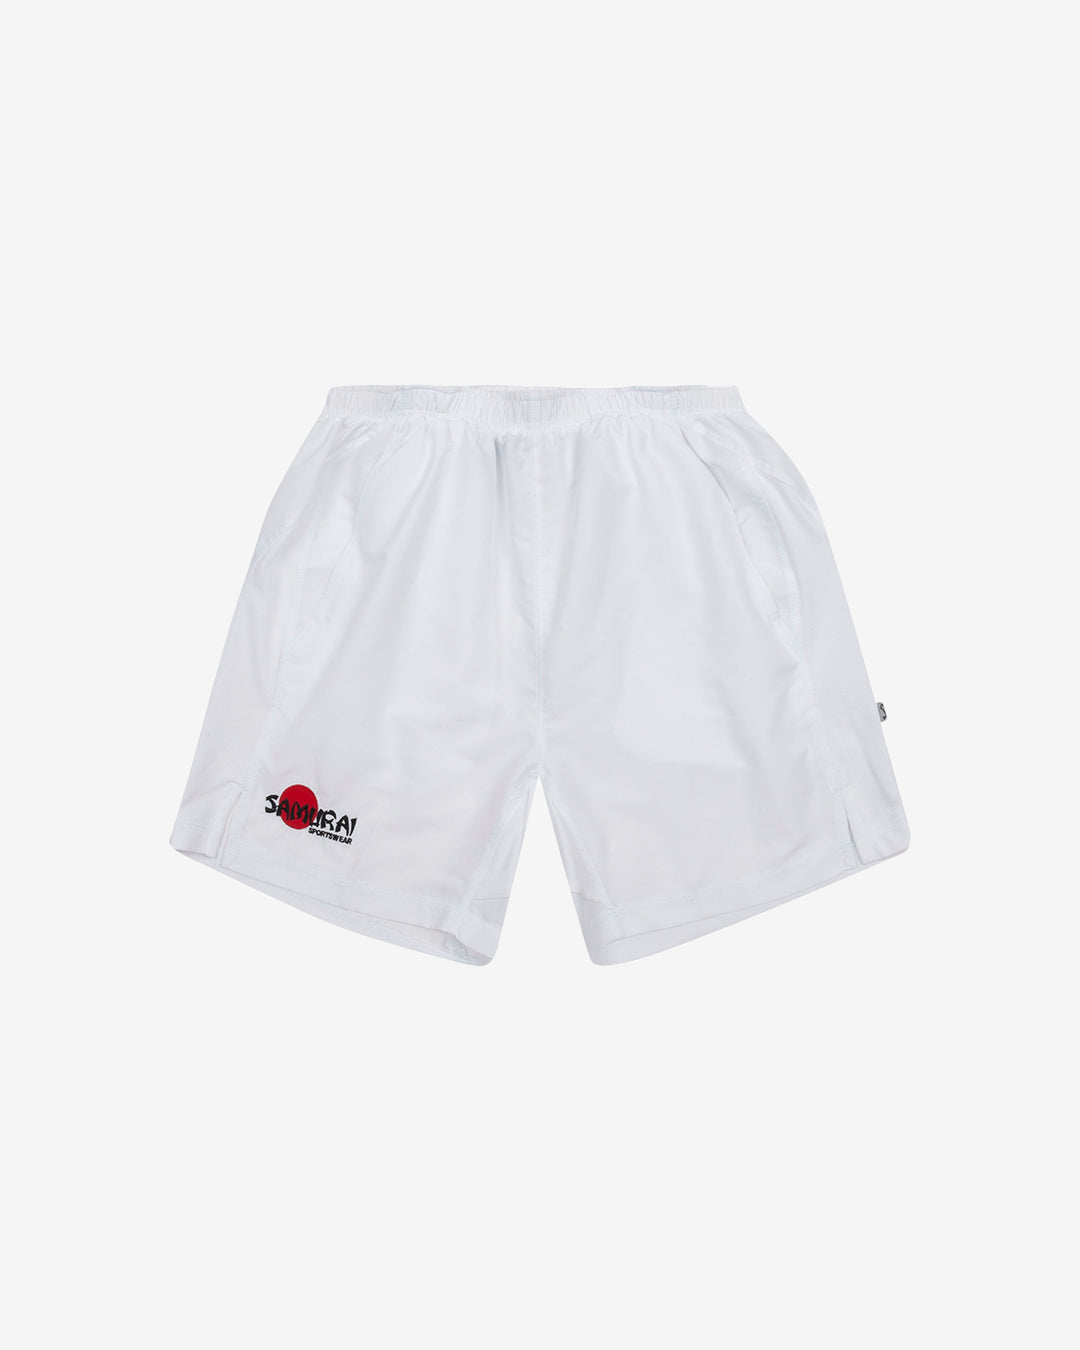 Hc: 9606 - Clipper Shorts - White